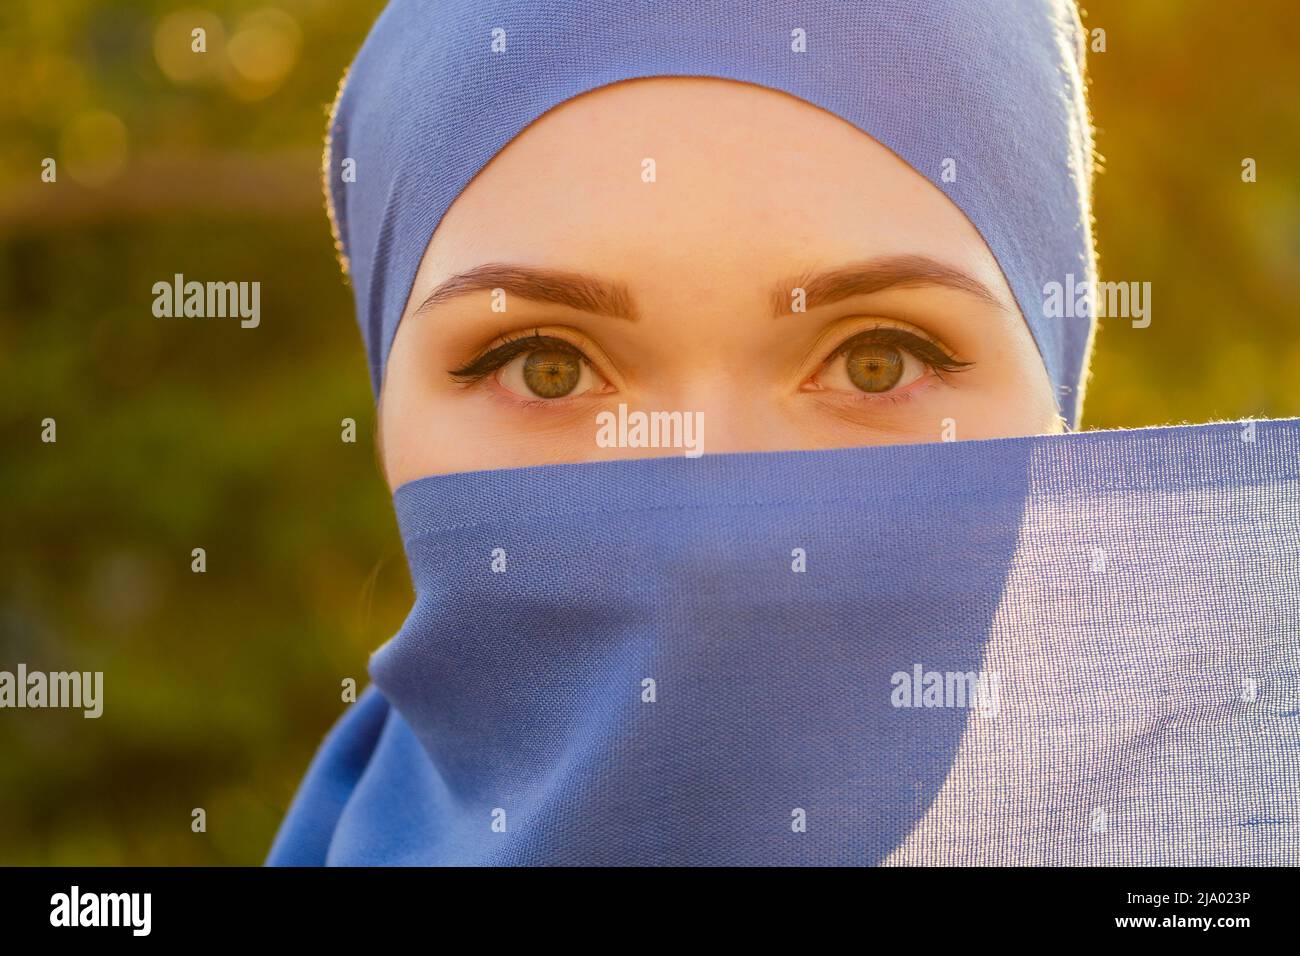 Portrait der schönen muslimischen Frau mit grünen Augen tragen blauen Schal Gesicht geschlossen mit aveil Hintergrund Wald Bäume im Park bedeckt Stockfoto